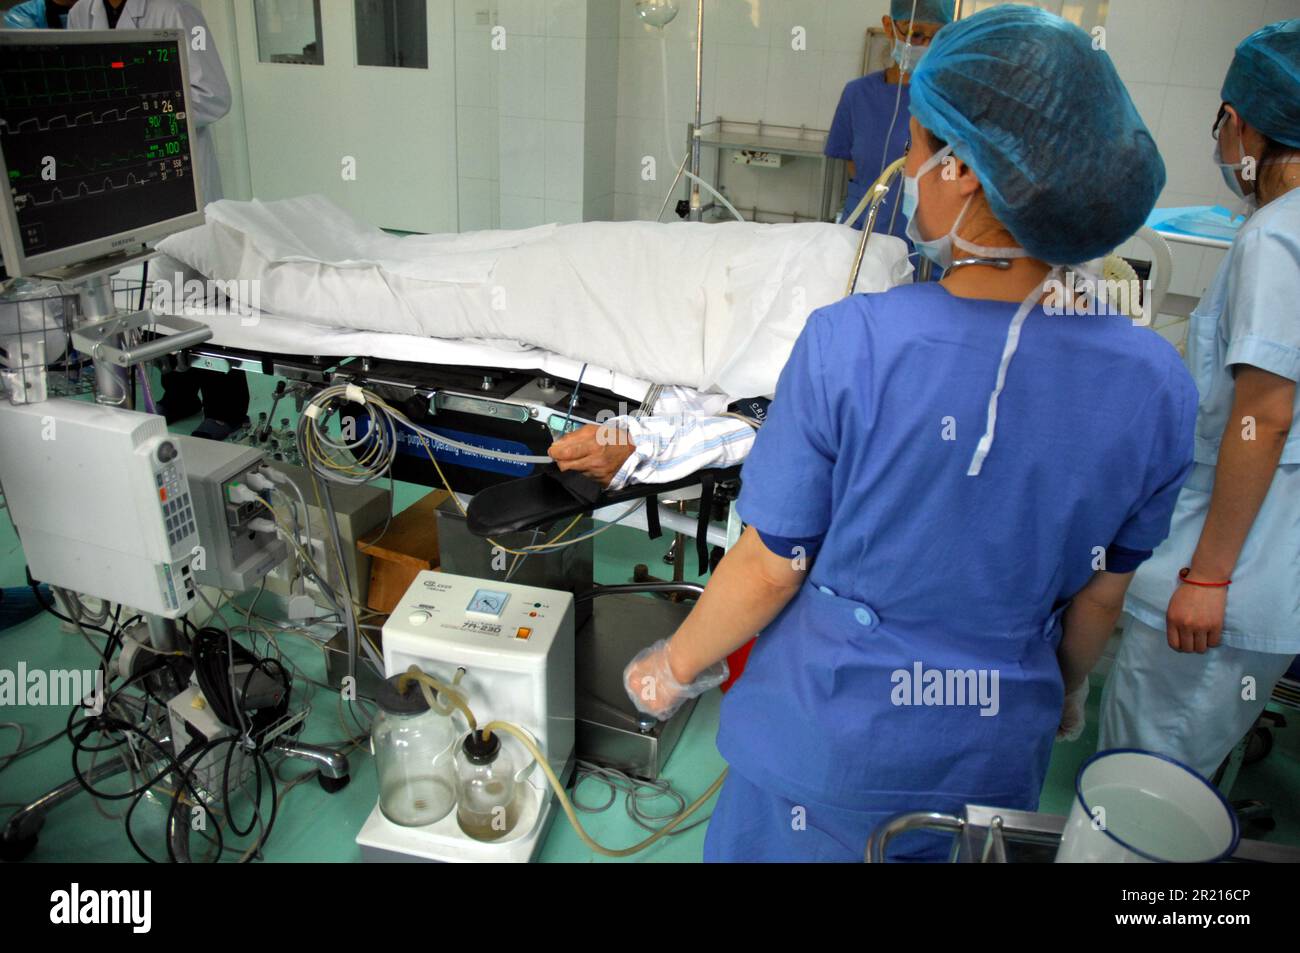 Ausländische Experten aus verschiedenen Bereichen besuchen das Pneumokoniose- und Rehabilitationszentrum und Krankenhaus Beihaide in Beidaihe, Provinz Hebei, um die Behandlung und Rehabilitation von Pneumokoniose-Kranken zu sehen viele, die sich einer „Lungenwäsche“ unterzogen haben Stockfoto